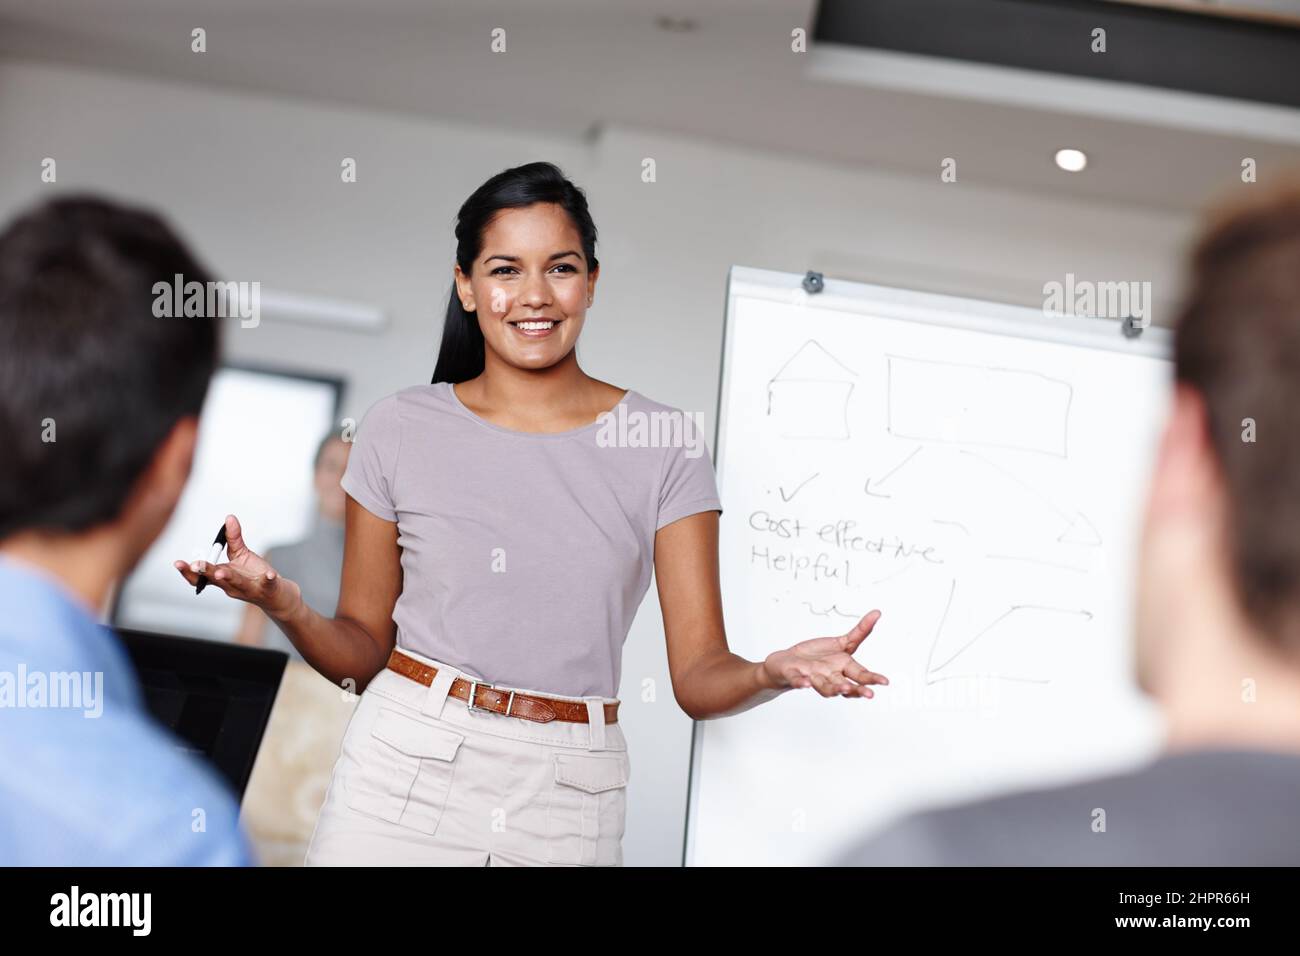 Factible es su especialidad. Una joven empresaria que facilita una reunión económica en la sala de juntas. Foto de stock